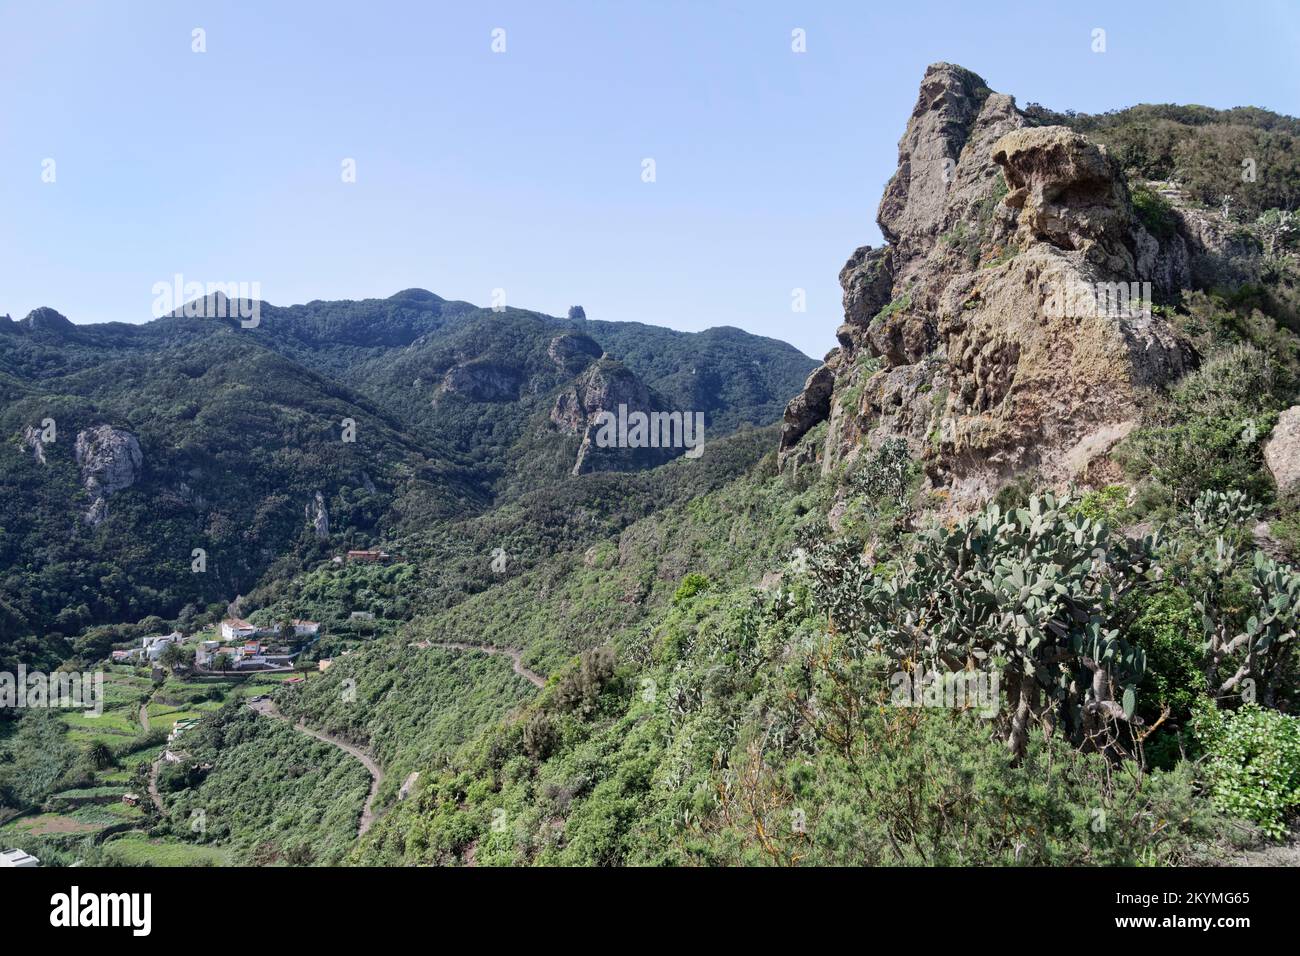 Panoramica del villaggio di Chamorga con il picco di Roque Bichuelo in primo piano, montagne di Anaga, Tenerife, Isole Canarie, Spagna, Novembre. Foto Stock